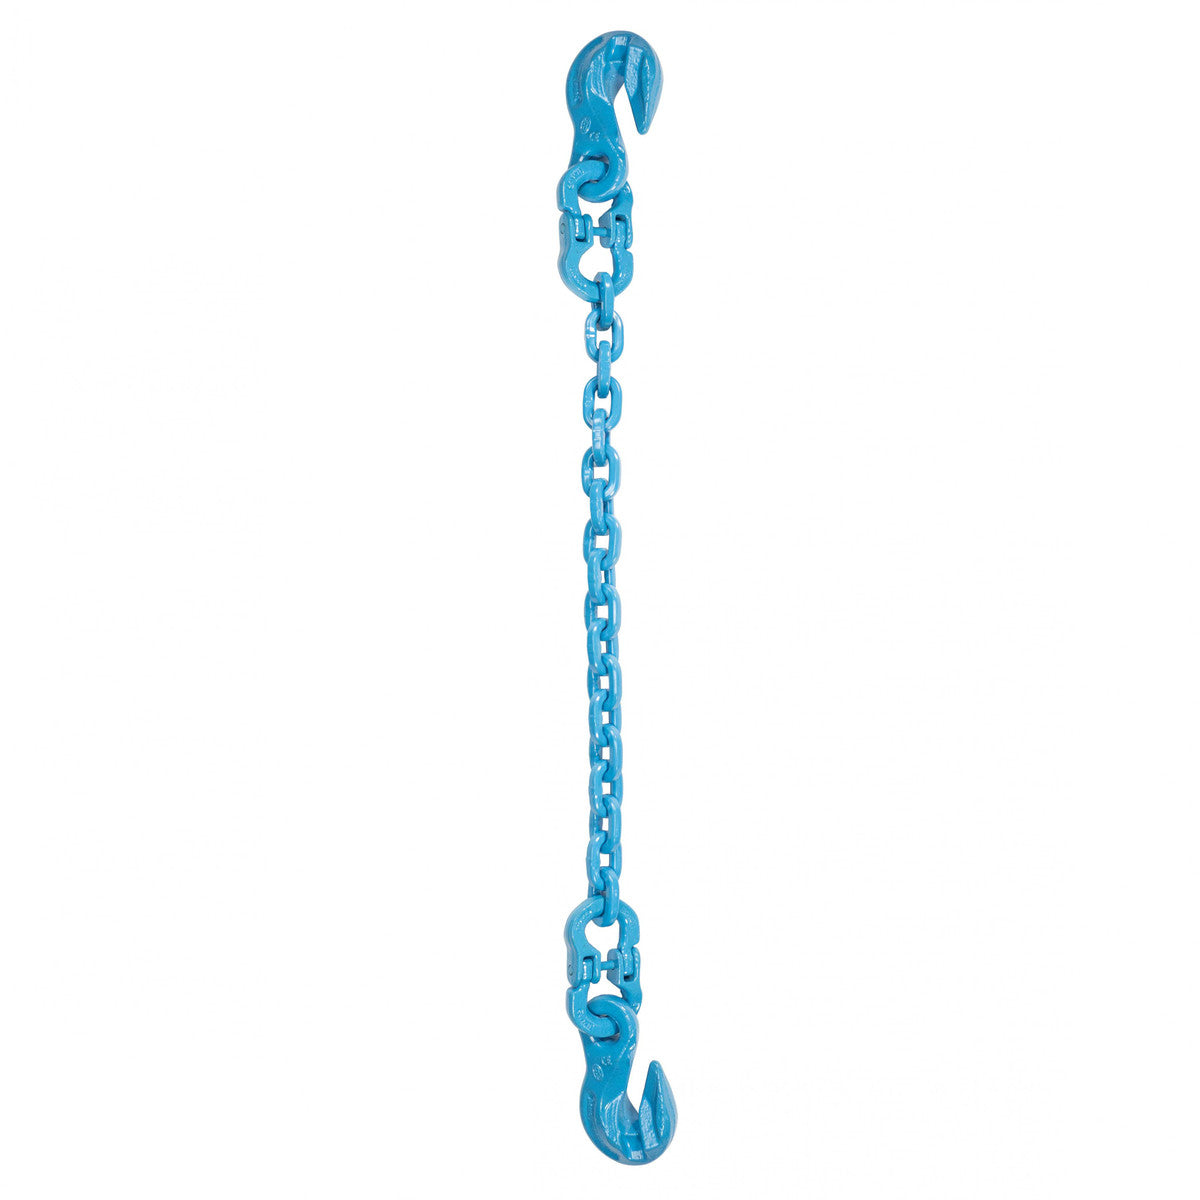 1/2" x 10' - Pewag Single Leg Chain Sling w/ Grab & Grab Hooks - Grade 120